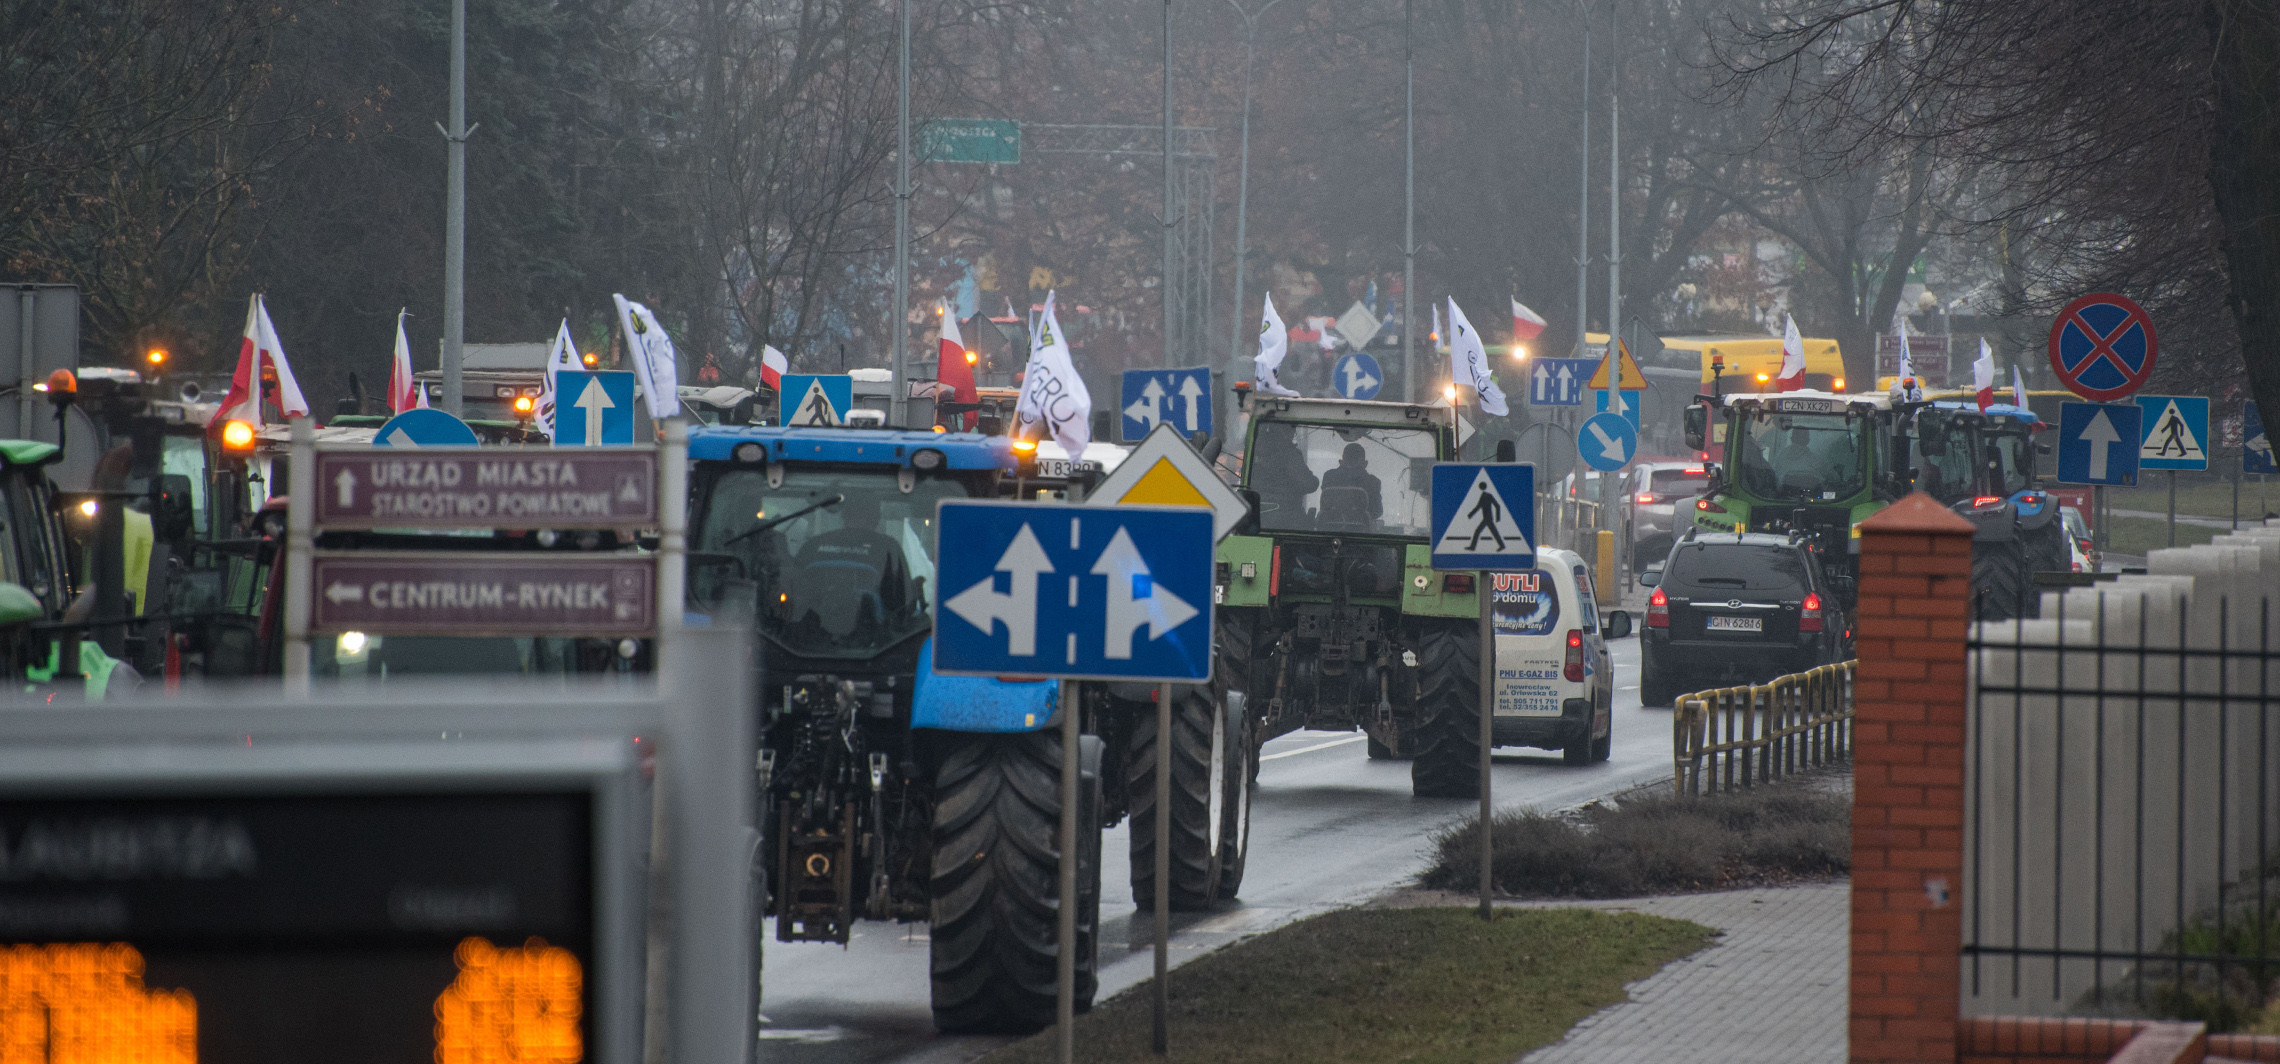 Inowrocław - Będą protestować. Zablokują drogę na 12 godzin